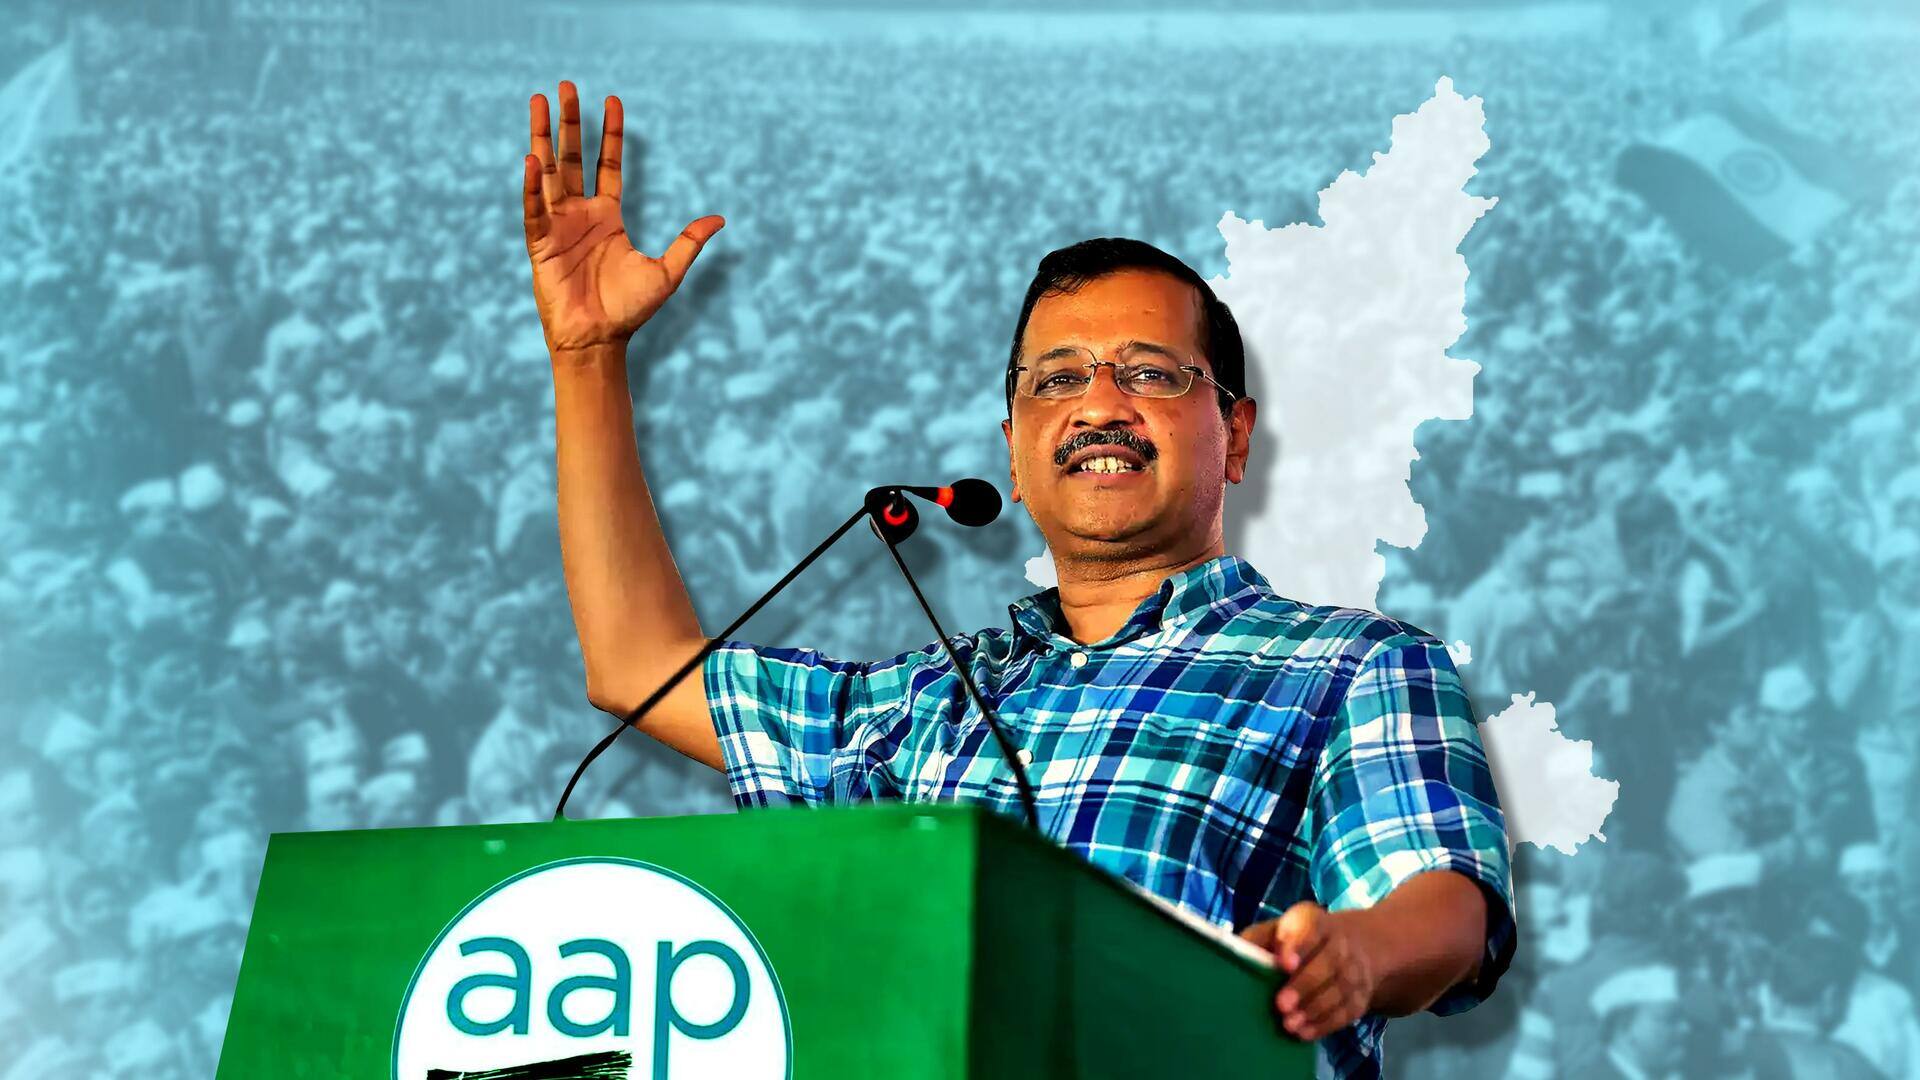 AAP राष्ट्रीय पार्टी के दर्जे के लिए कर्नाटक हाई कोर्ट पहुंची, चुनाव आयोग को नोटिस जारी